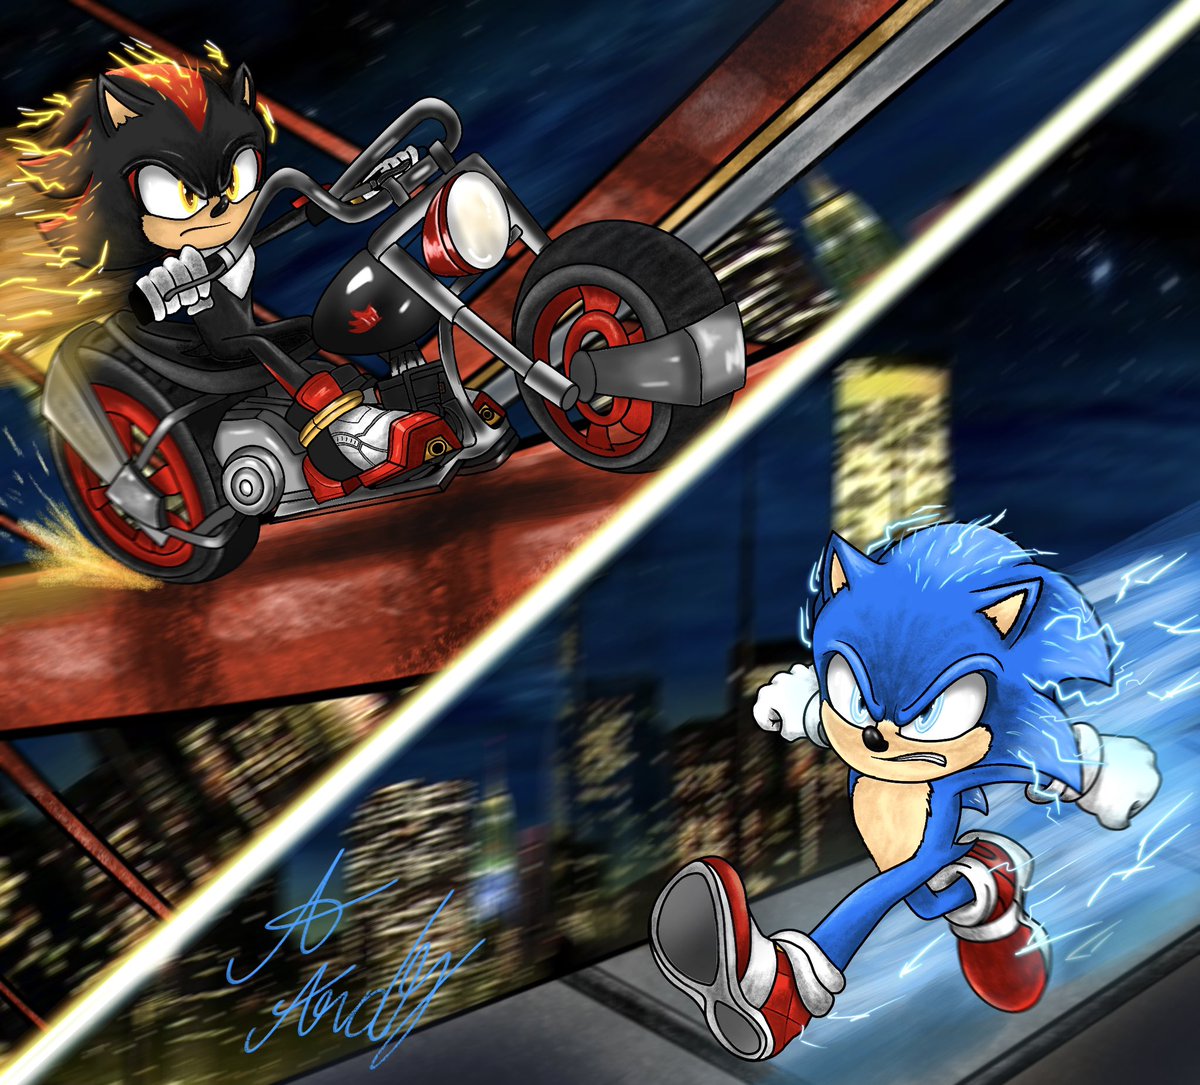 Speed demons 
#FanArtFriday #SonicMovie3 #sonicfanart #SonicMovie #ShadowTheHedeghog